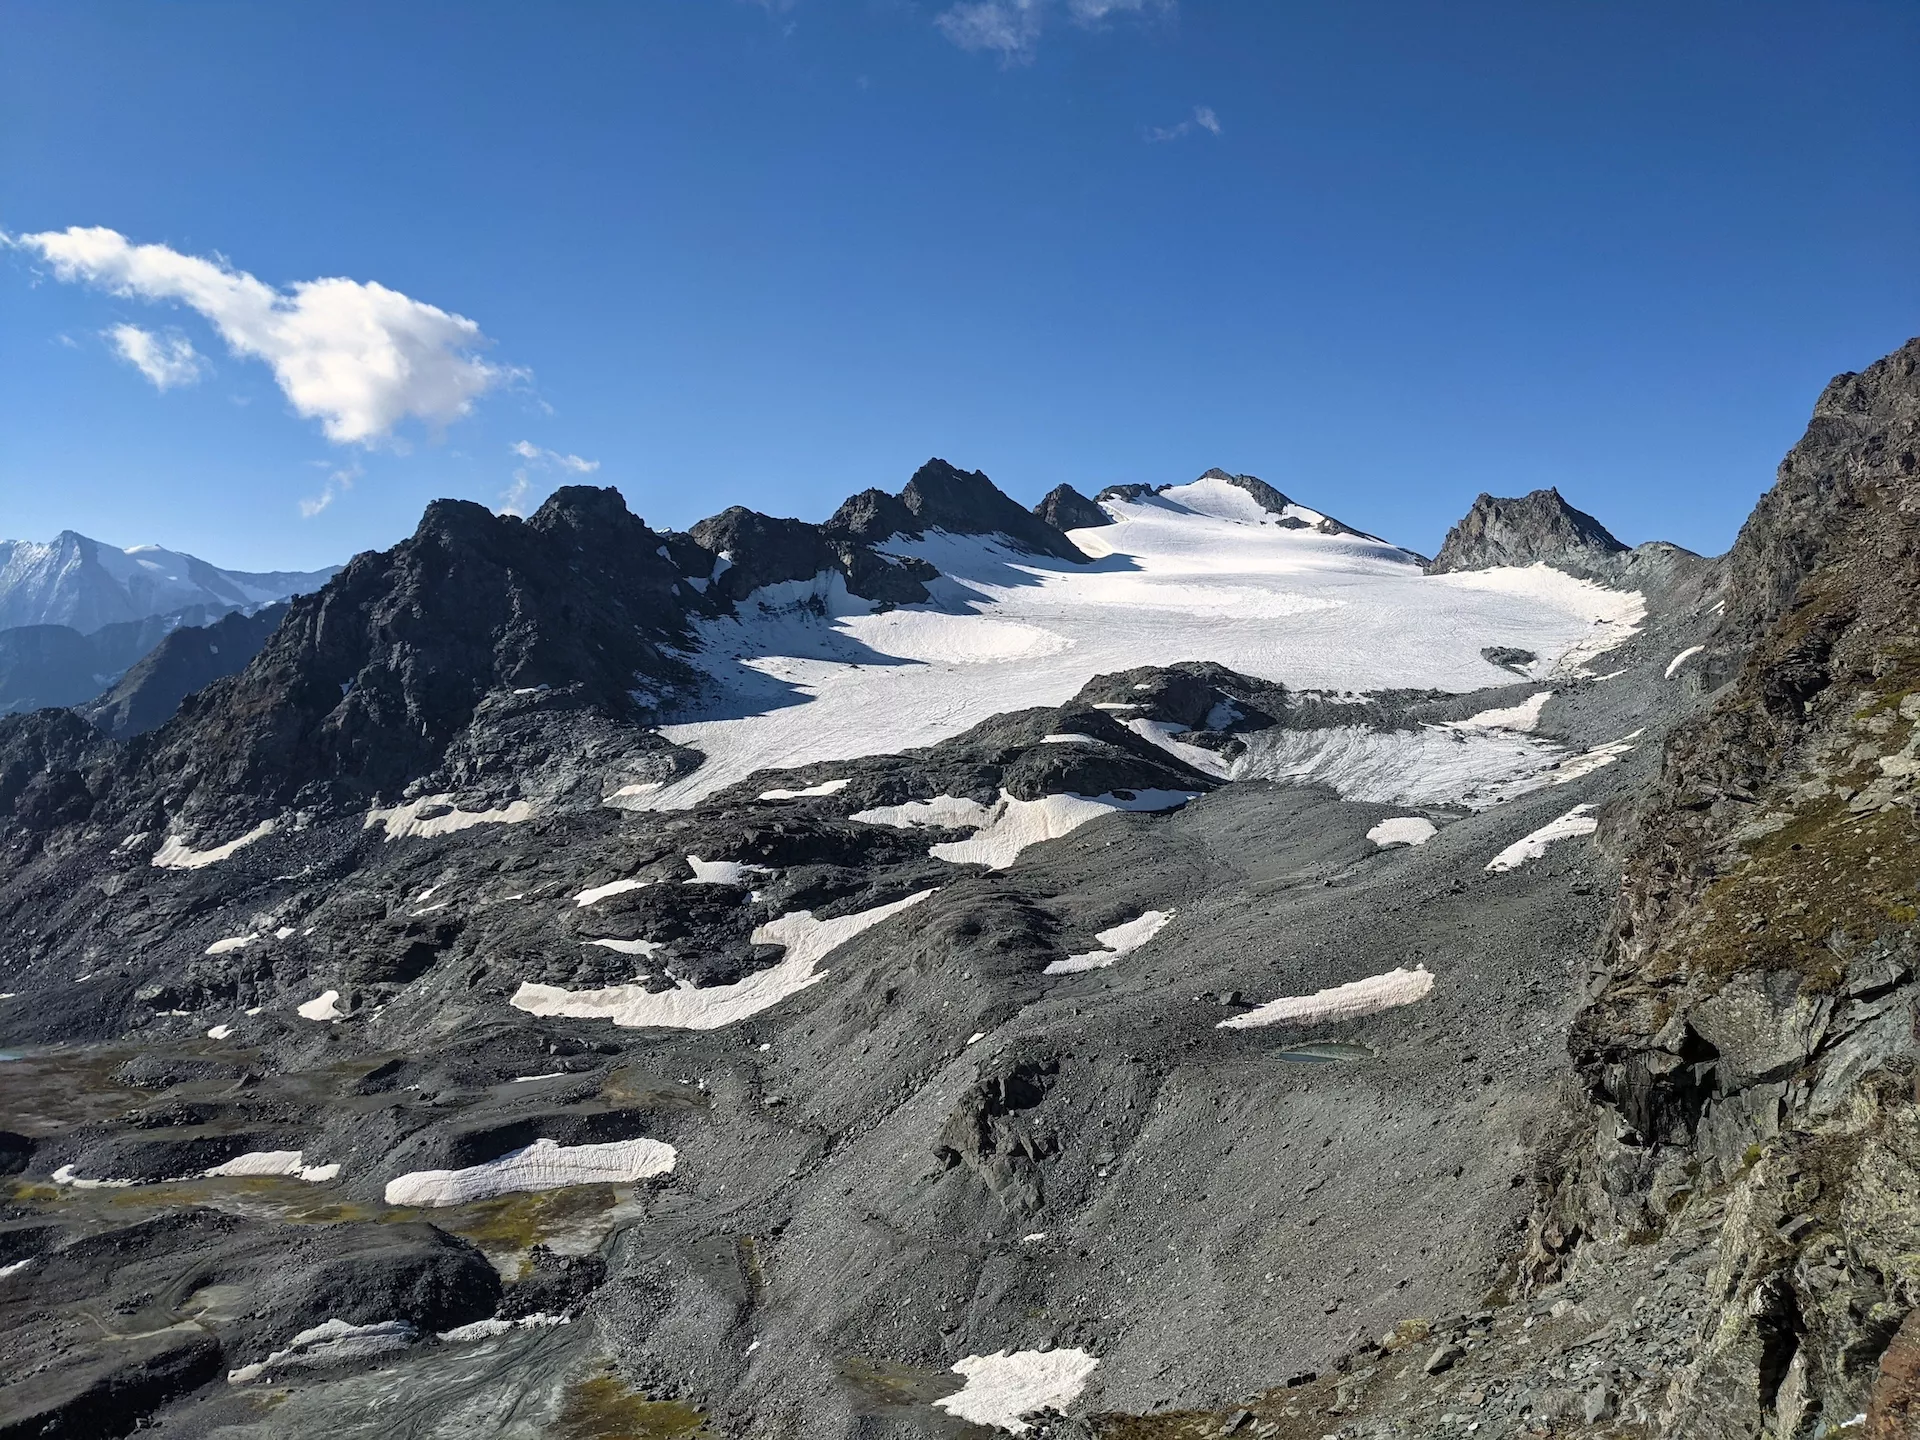 Blick auf den Rosablanche-Gletscher vom Col de Prafleuri